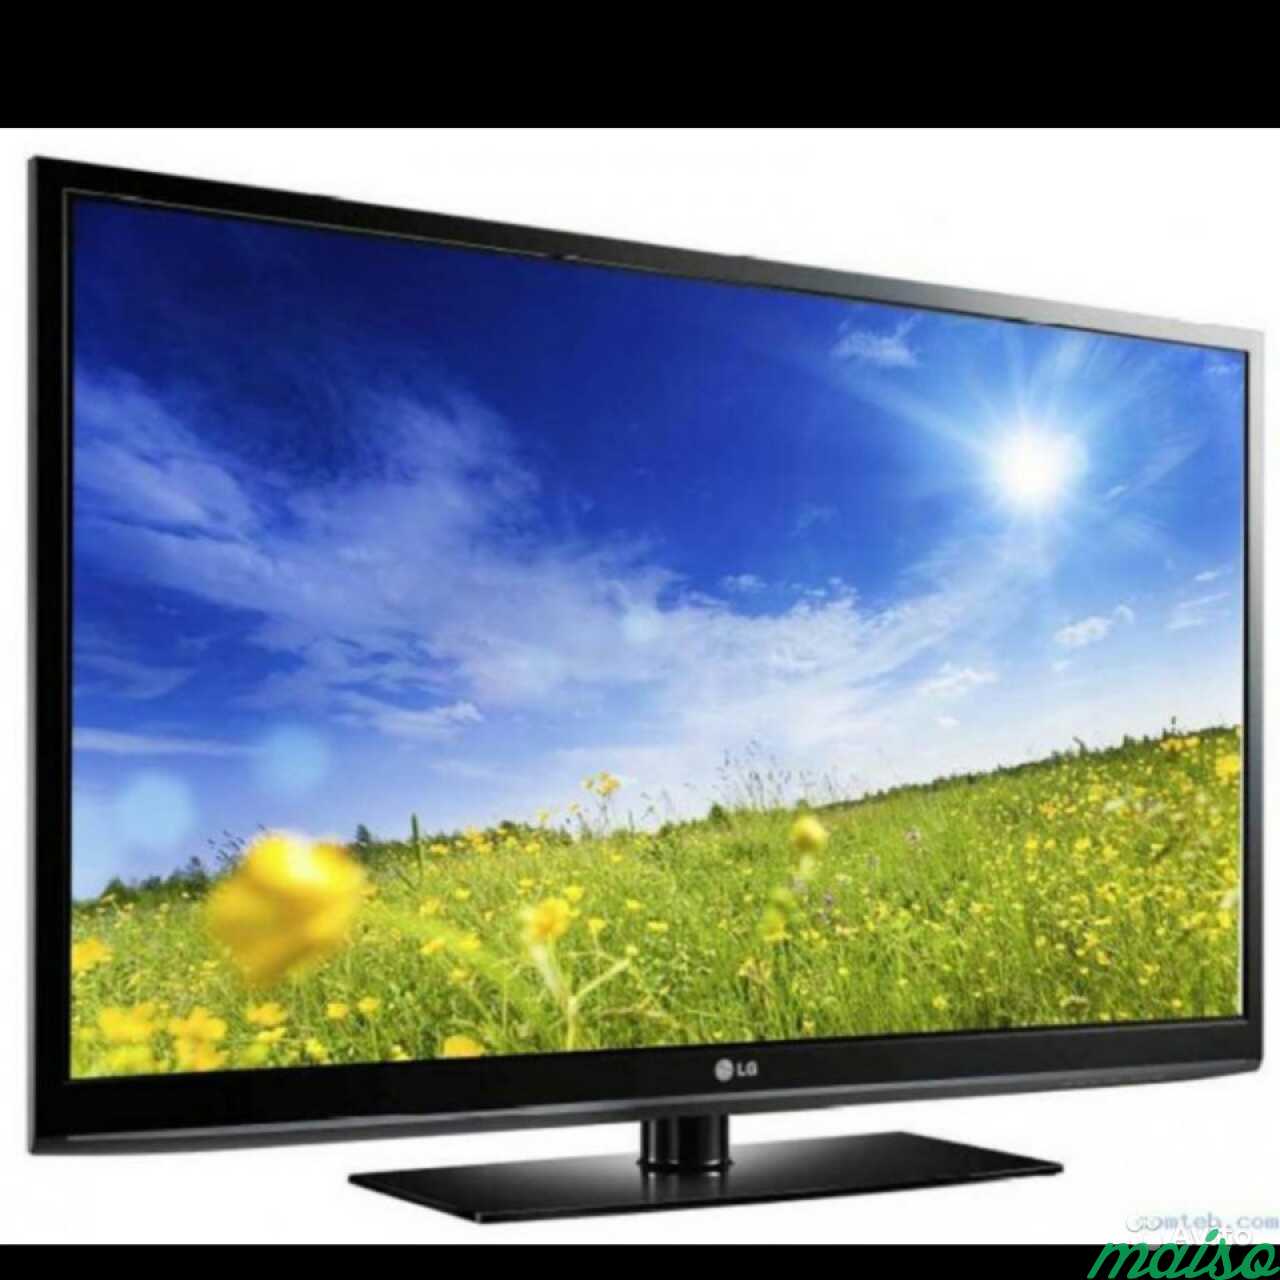 Телевизор лж 50. Телевизор LG плазма 50 дюймов. LG 50pq301r-ZB. Телевизор LG 50pk350 50". Плазма LG 42 дюйма.